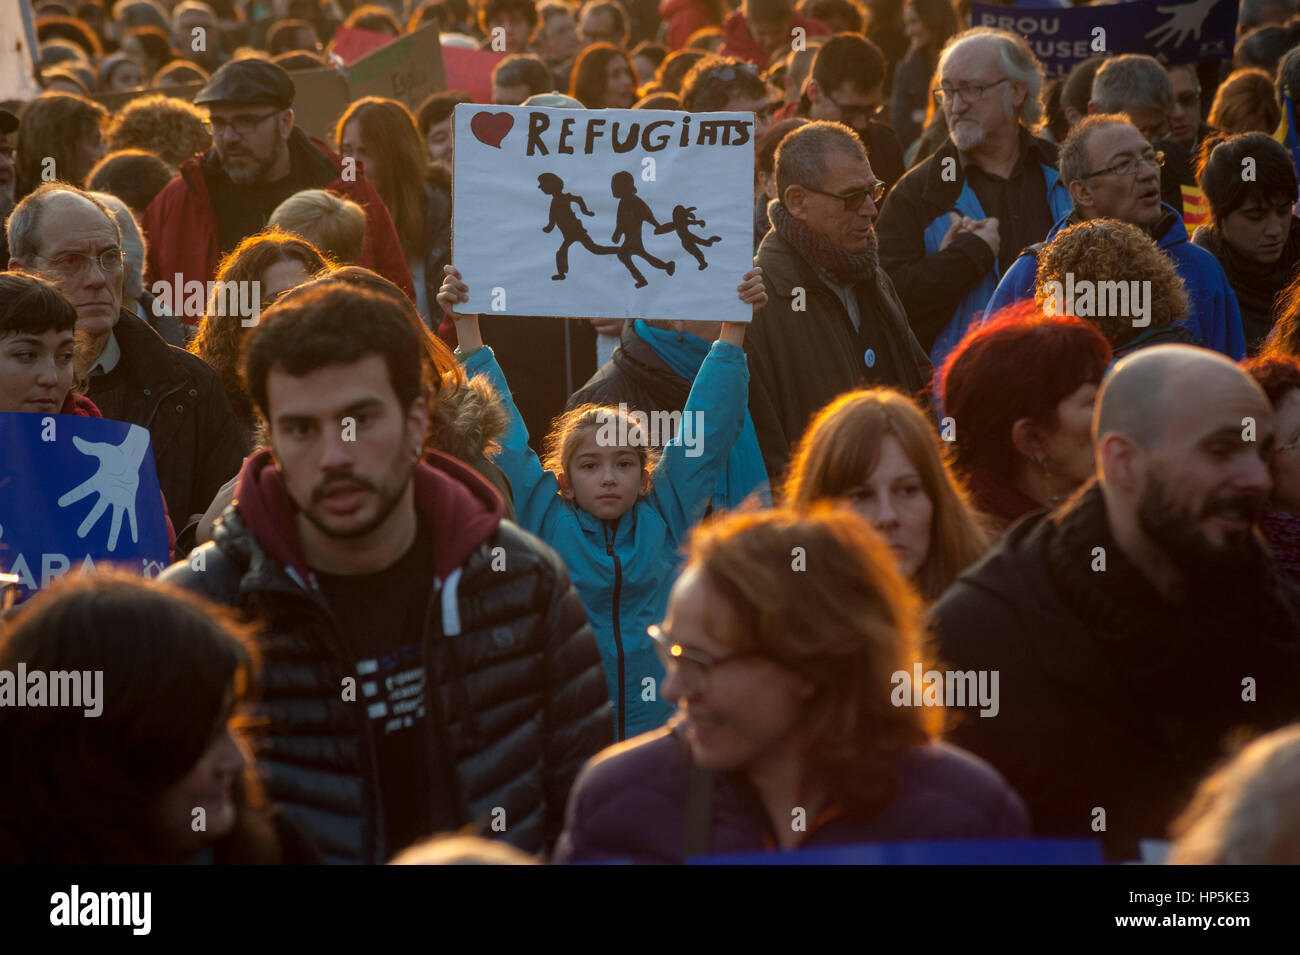 Barcelone, Espagne. 18 Février, 2017. Des milliers de personnes ont manifesté à Barcelone pour exiger le gouvernement espagnol d'accroître ses efforts pour accueillir des réfugiés qui ont fui la guerre en Syrie et dans d'autres conflits violents. Crédit : Charlie Perez/Alamy Live News Banque D'Images